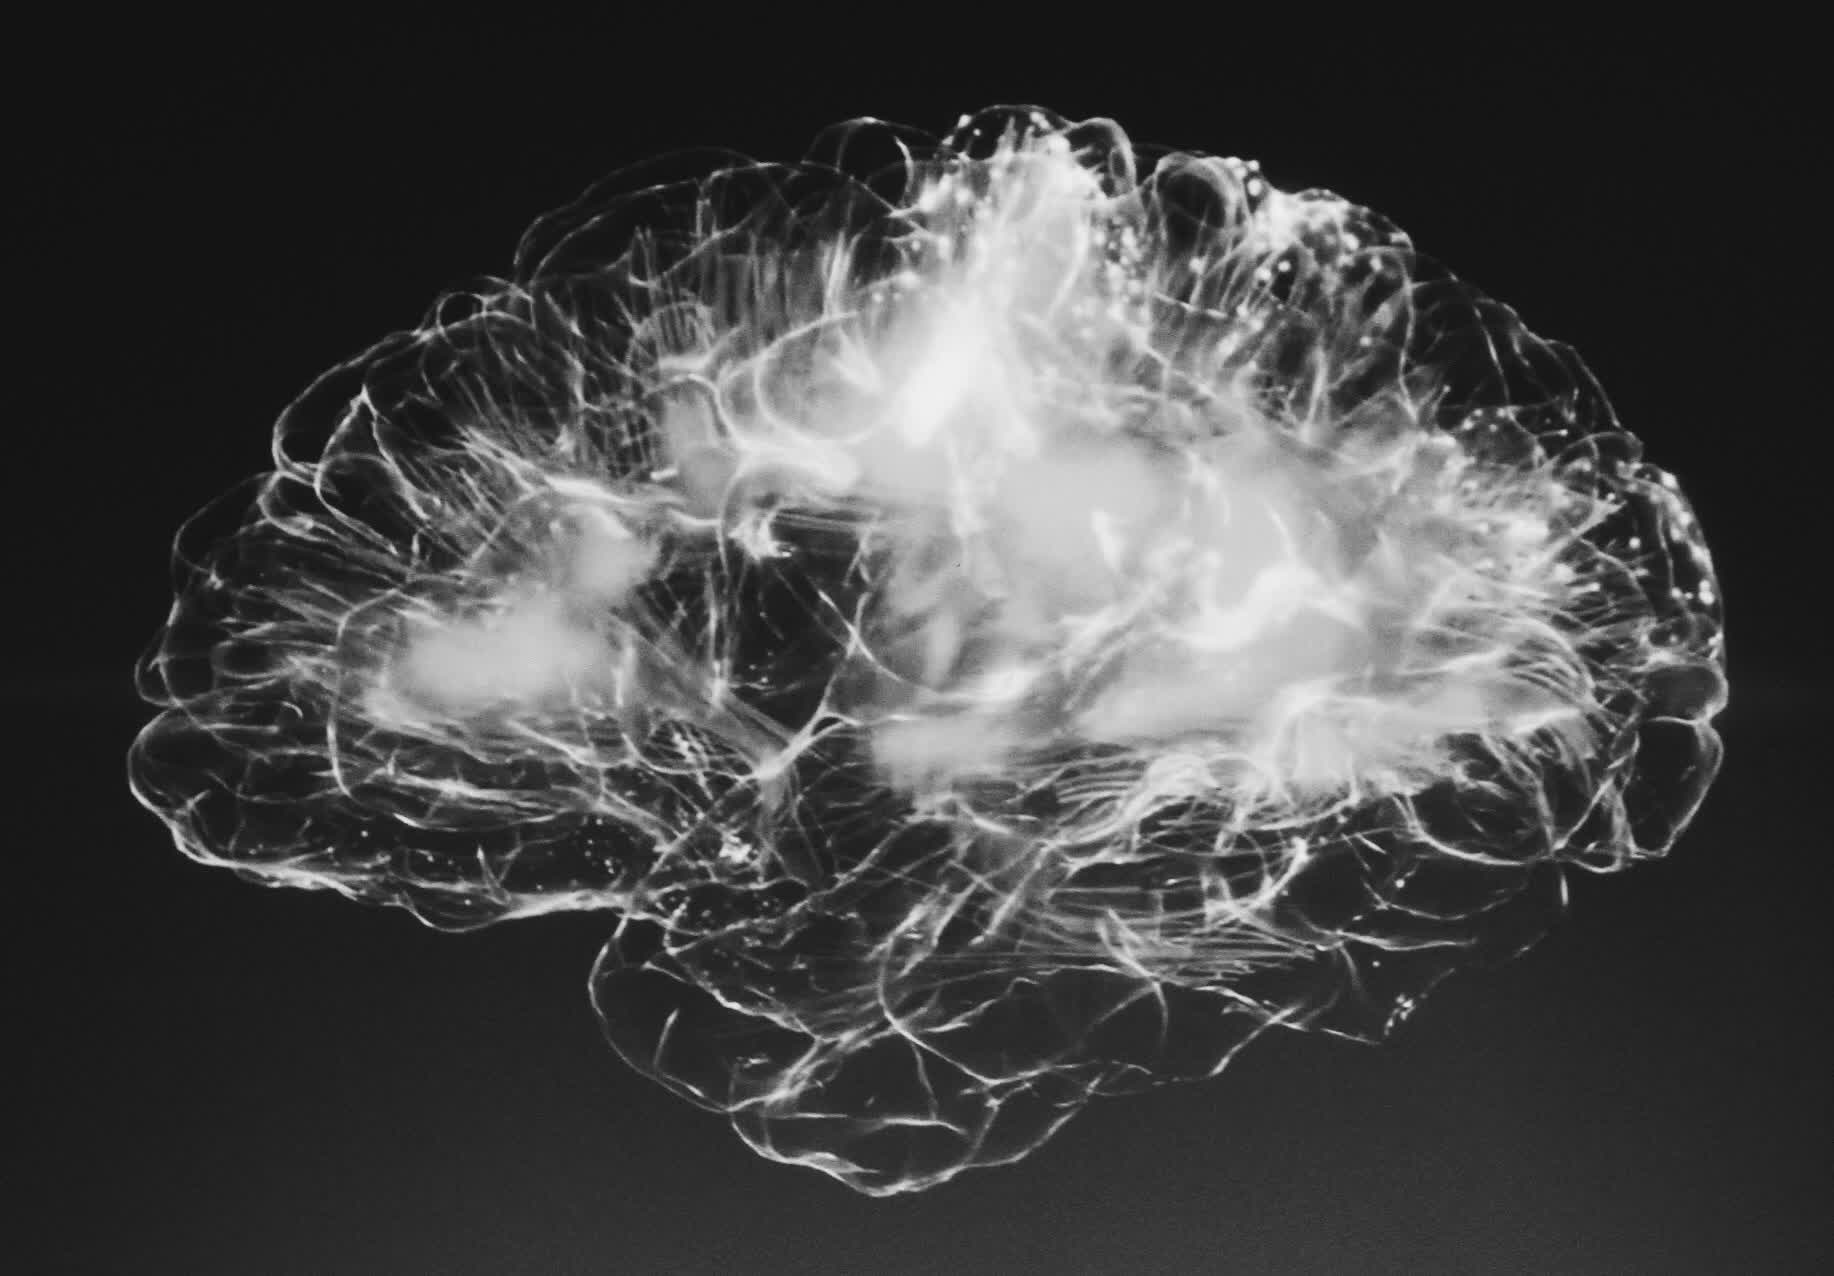 Neuralink recibe la aprobación de la FDA para un segundo implante de chip en el cerebro humano